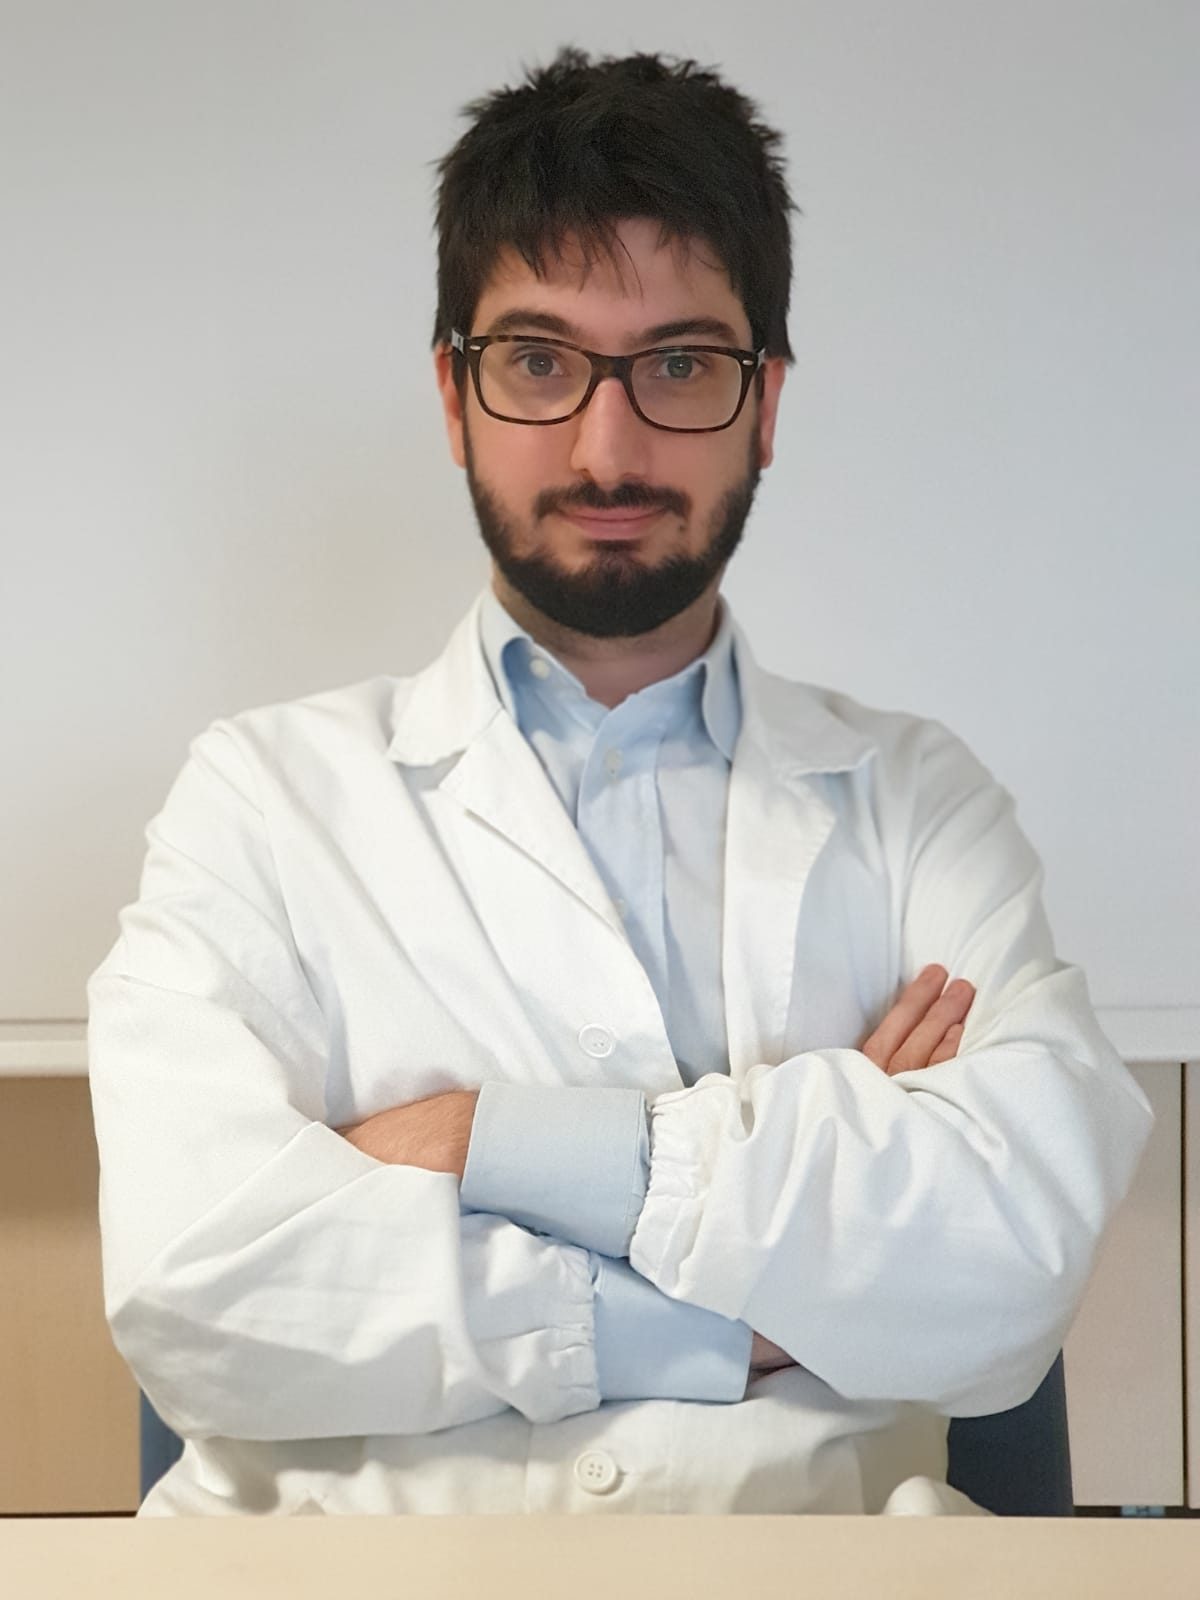 Dr. Andrea Preti